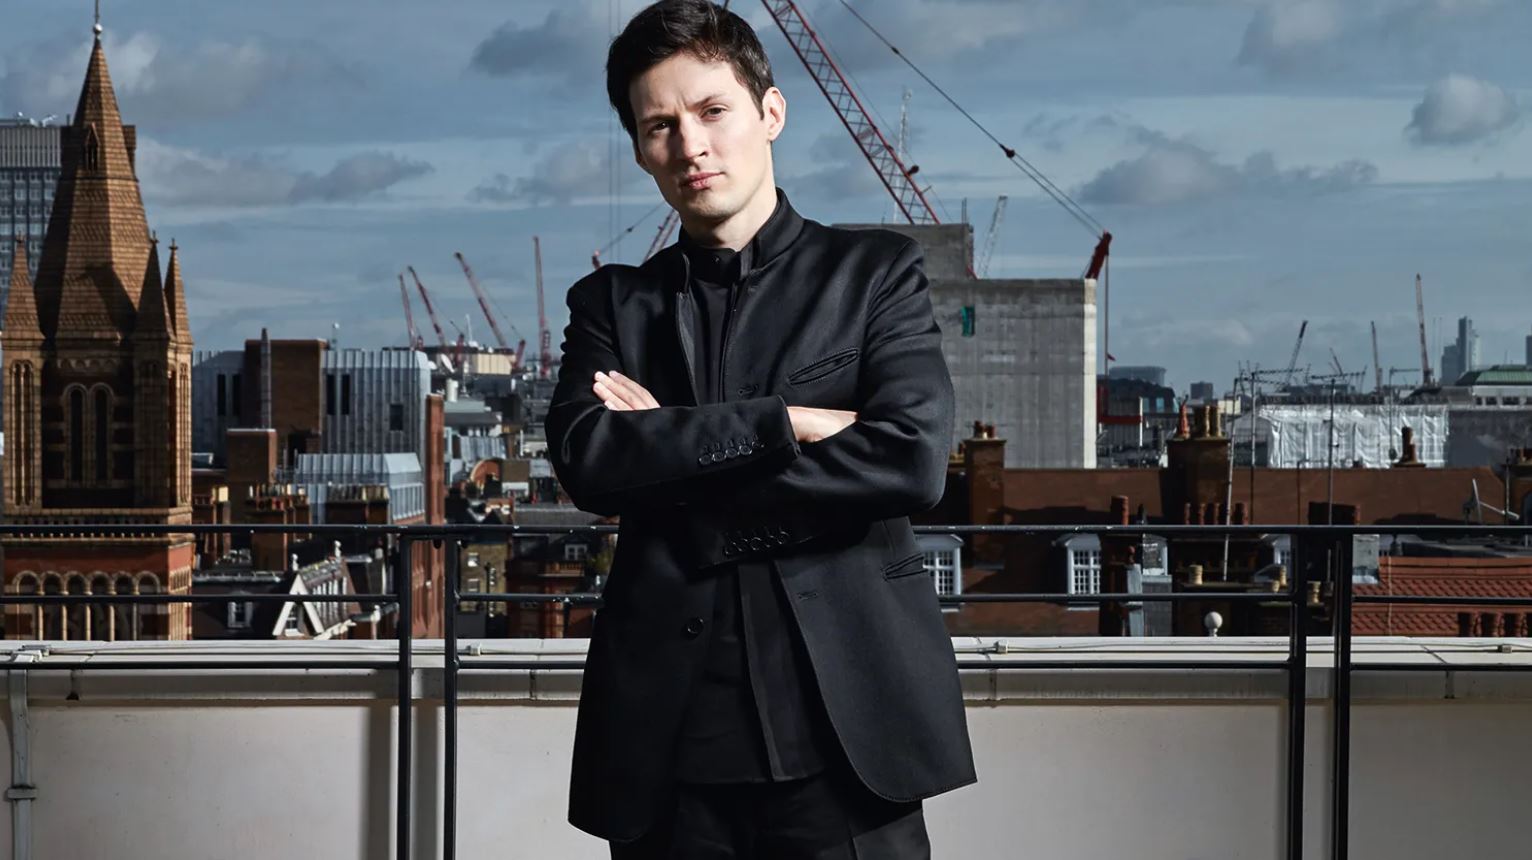 Павел Дуров получил четвертое гражданство